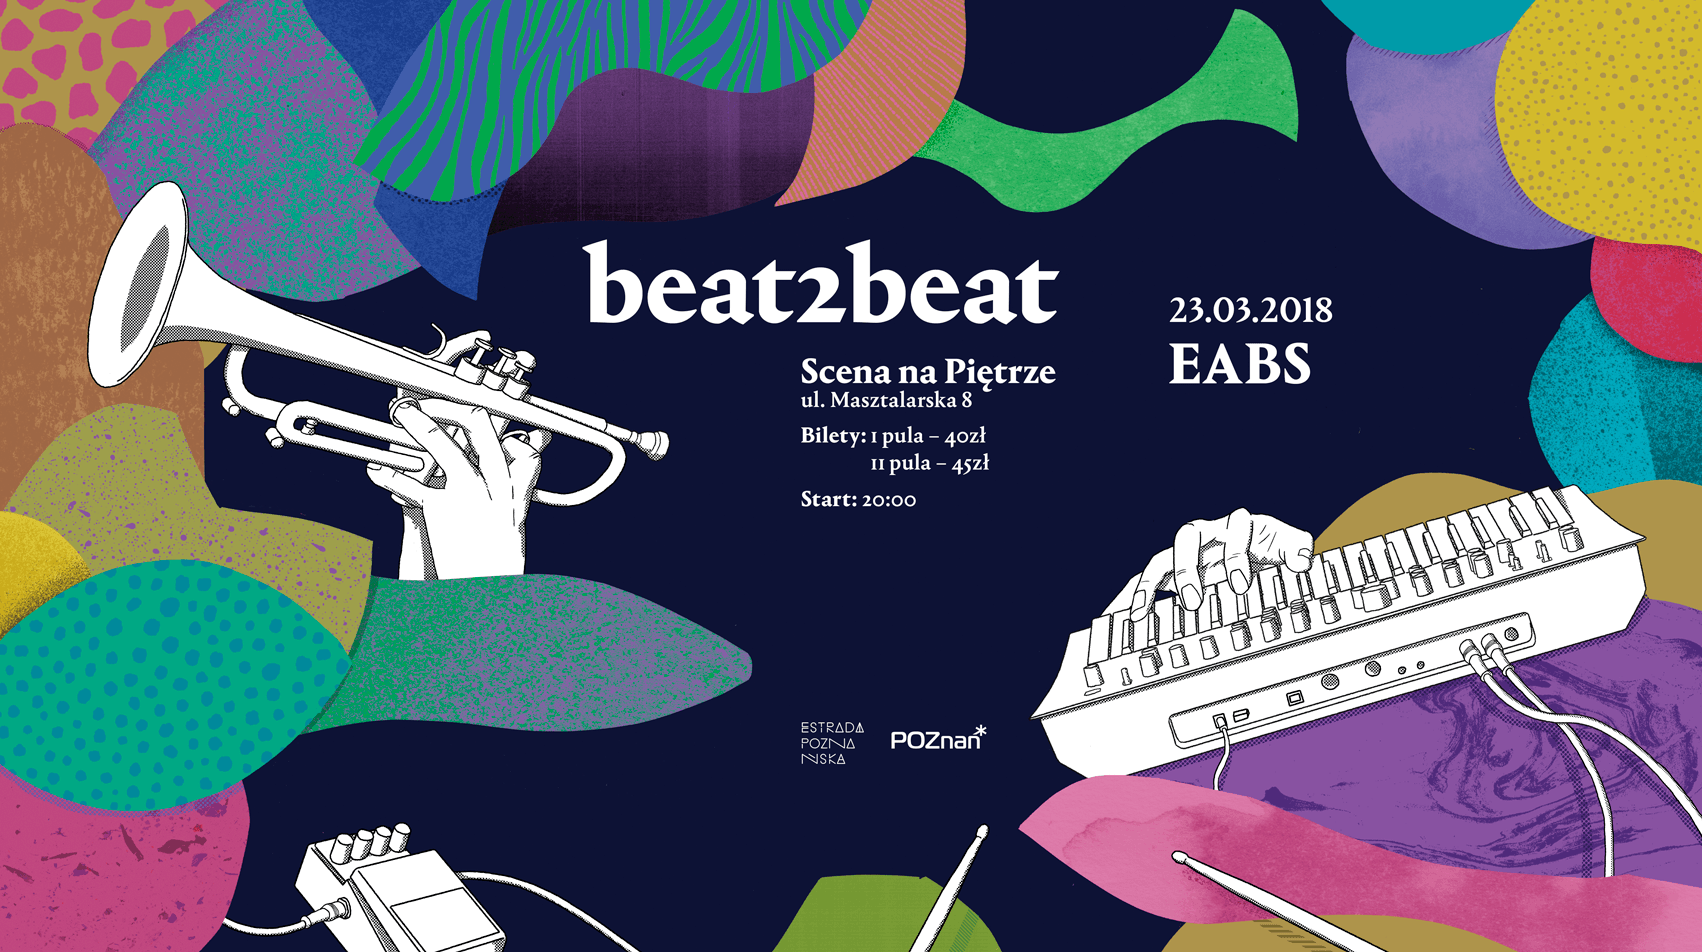 beat2beat - koncerty w Estradzie Poznańskiej